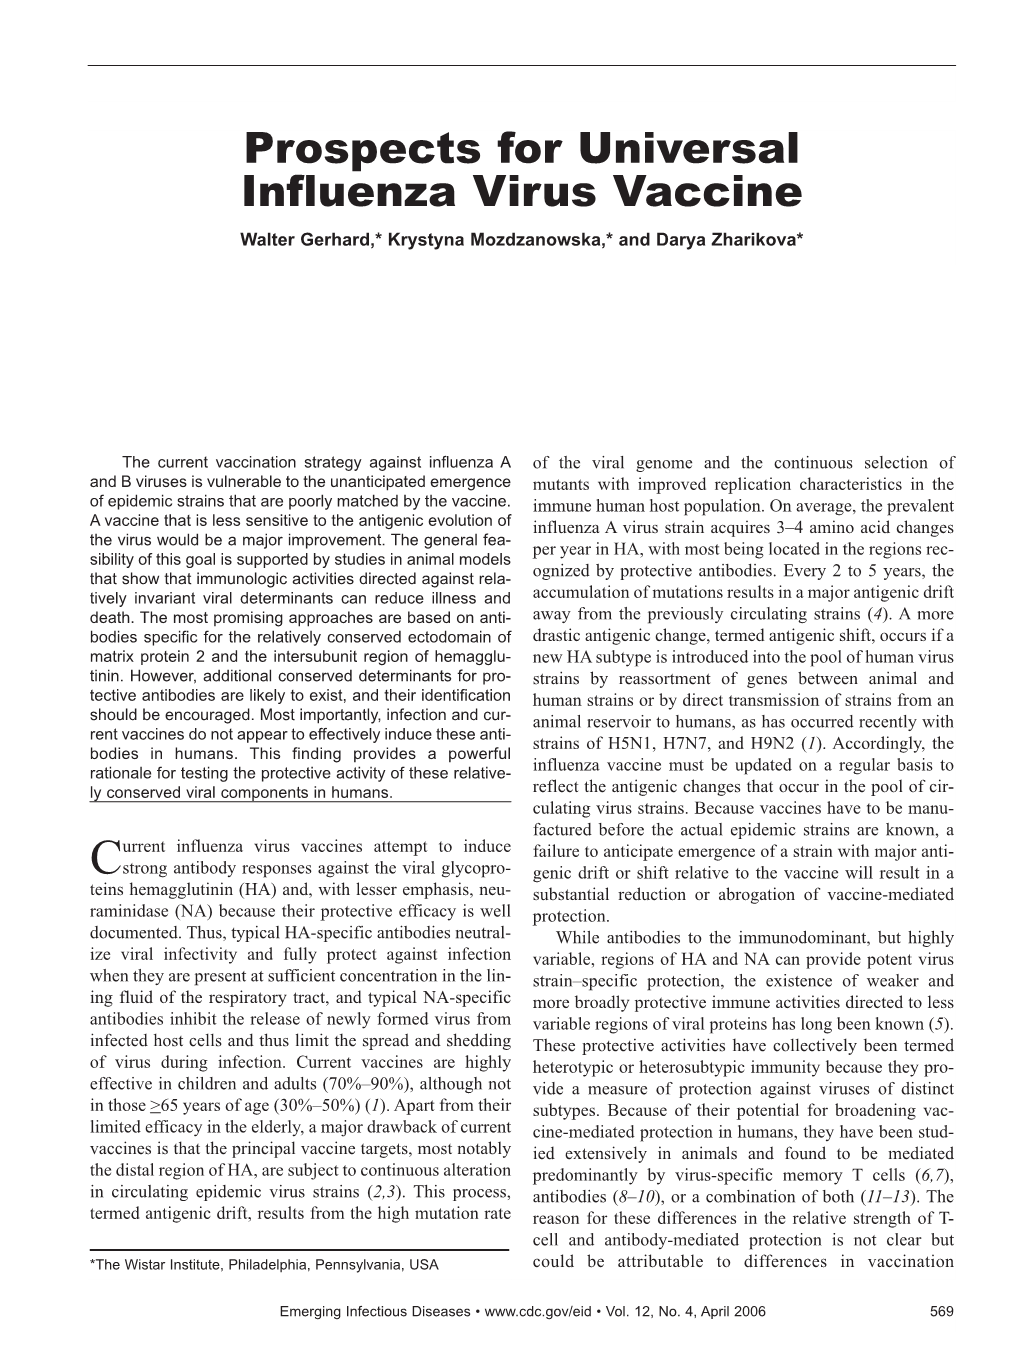 Prospects for Universal Influenza Virus Vaccine Walter Gerhard,* Krystyna Mozdzanowska,* and Darya Zharikova*